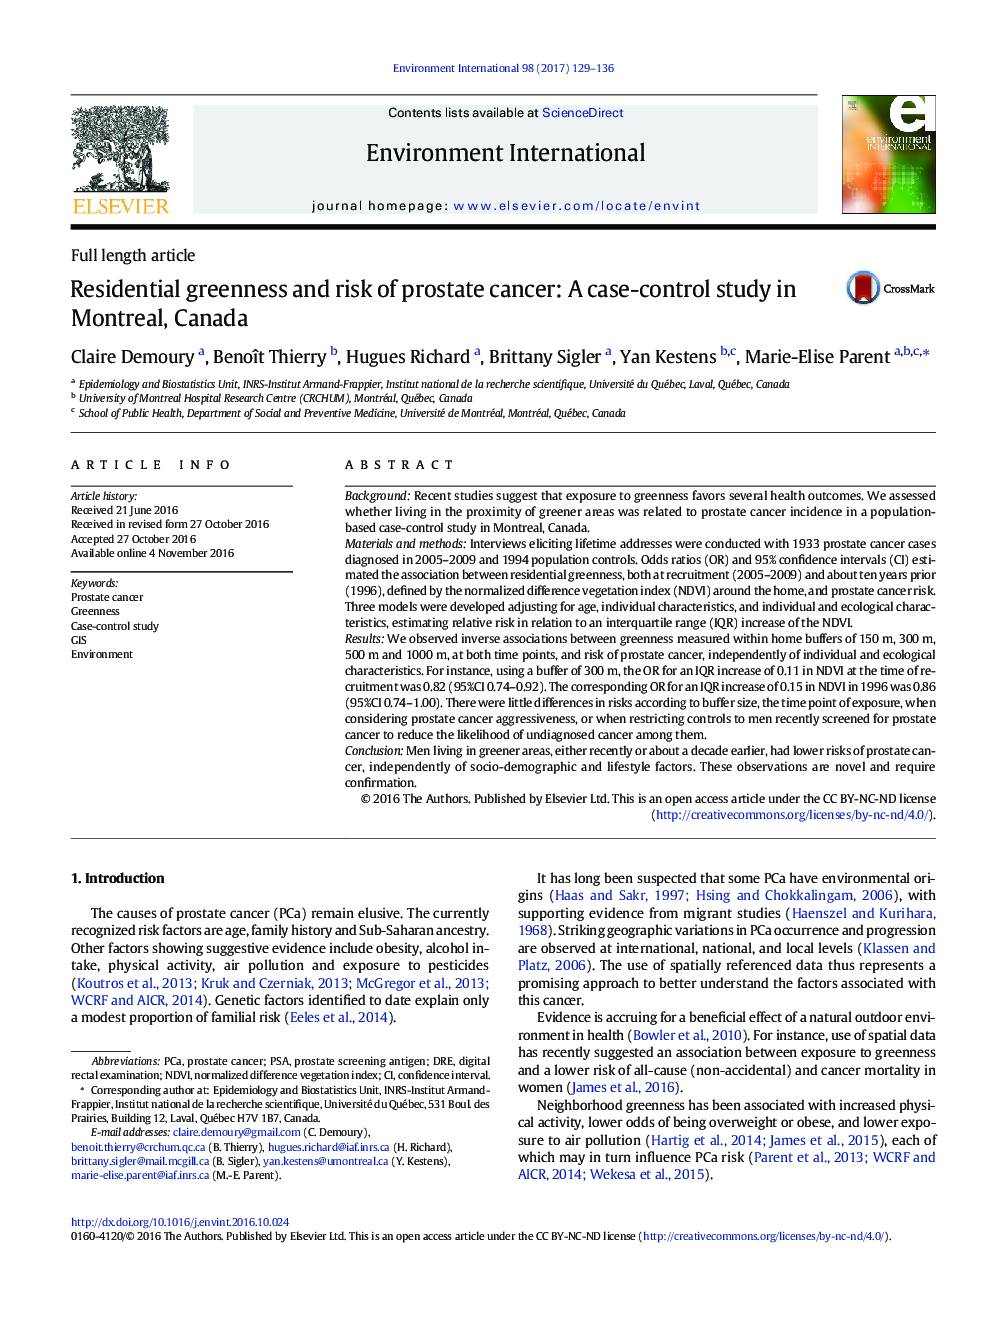 مقاله کامل مقاله سبز و خطر ابتلا به سرطان پروستات: یک مطالعه مورد - شاهدی در مونترال، کانادا 